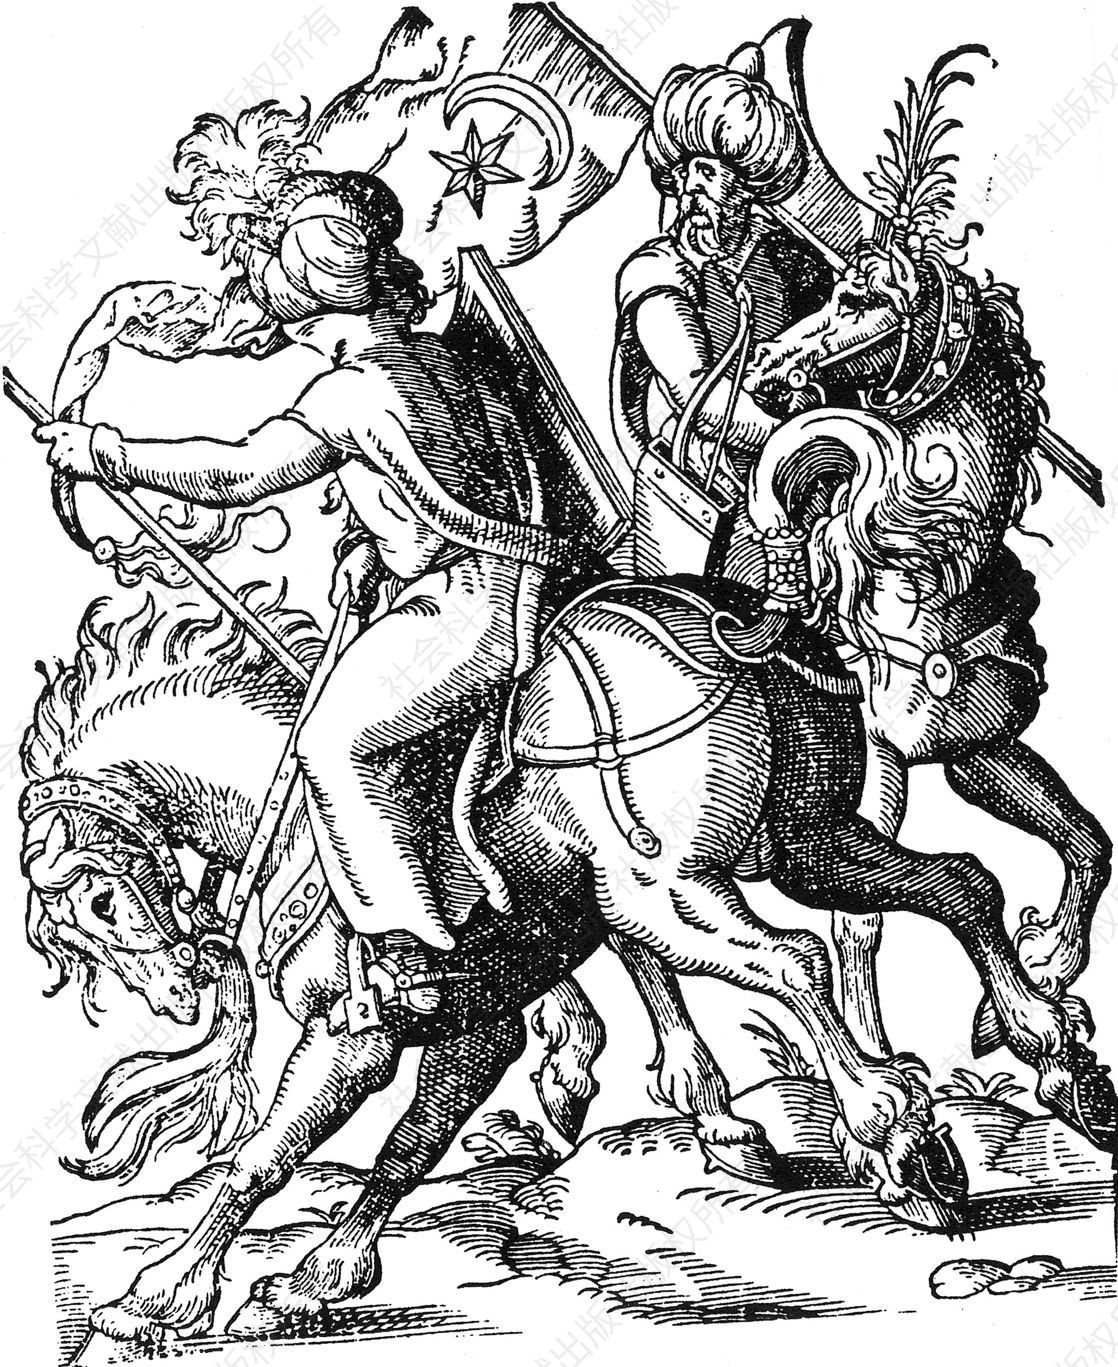 16世纪德意志印刷品中的奥斯曼骑兵